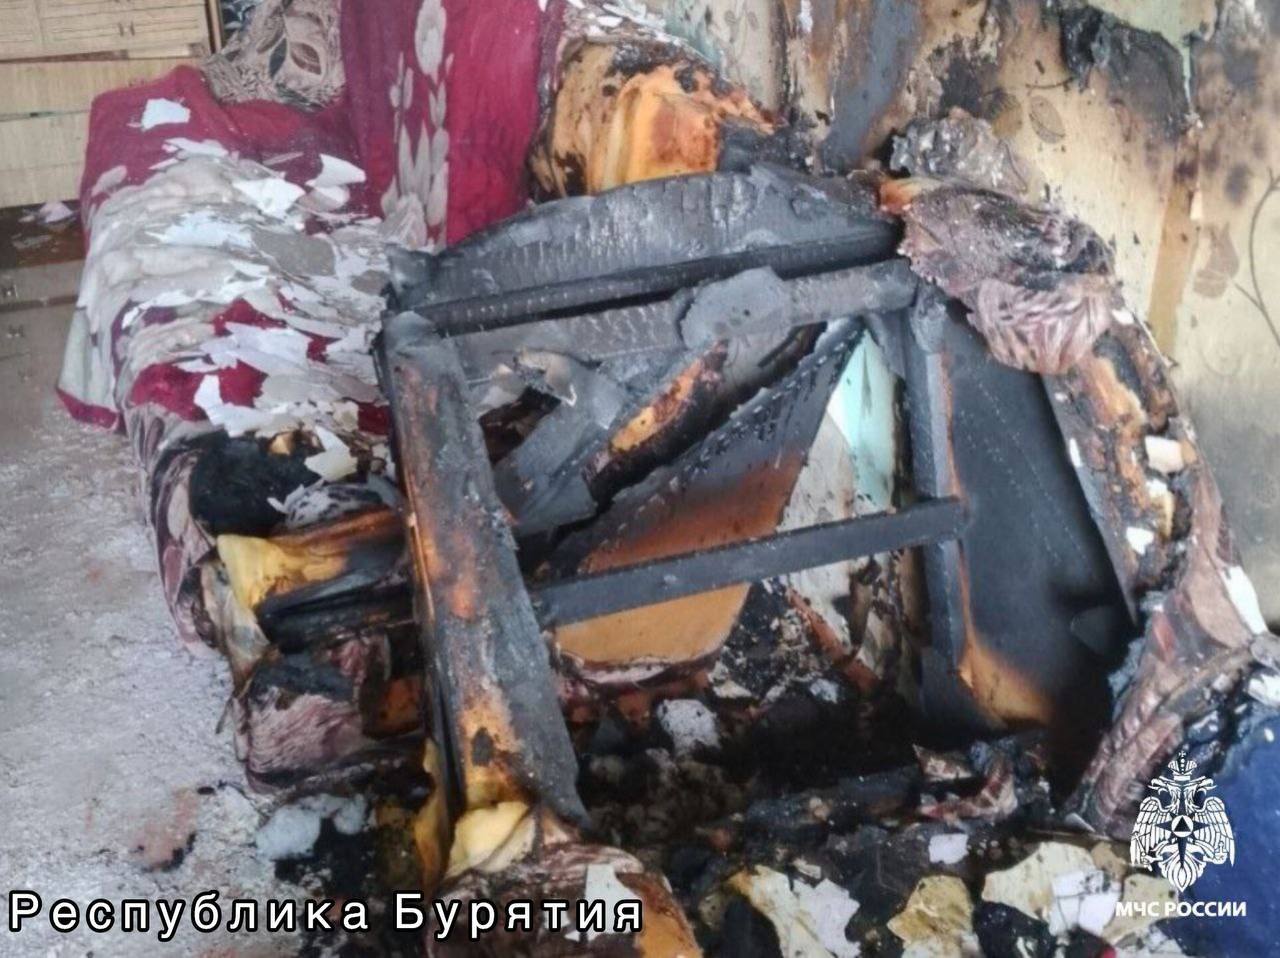 Шестилетний мальчик в Бурятии чуть не спалил дом, играя зажигалкой